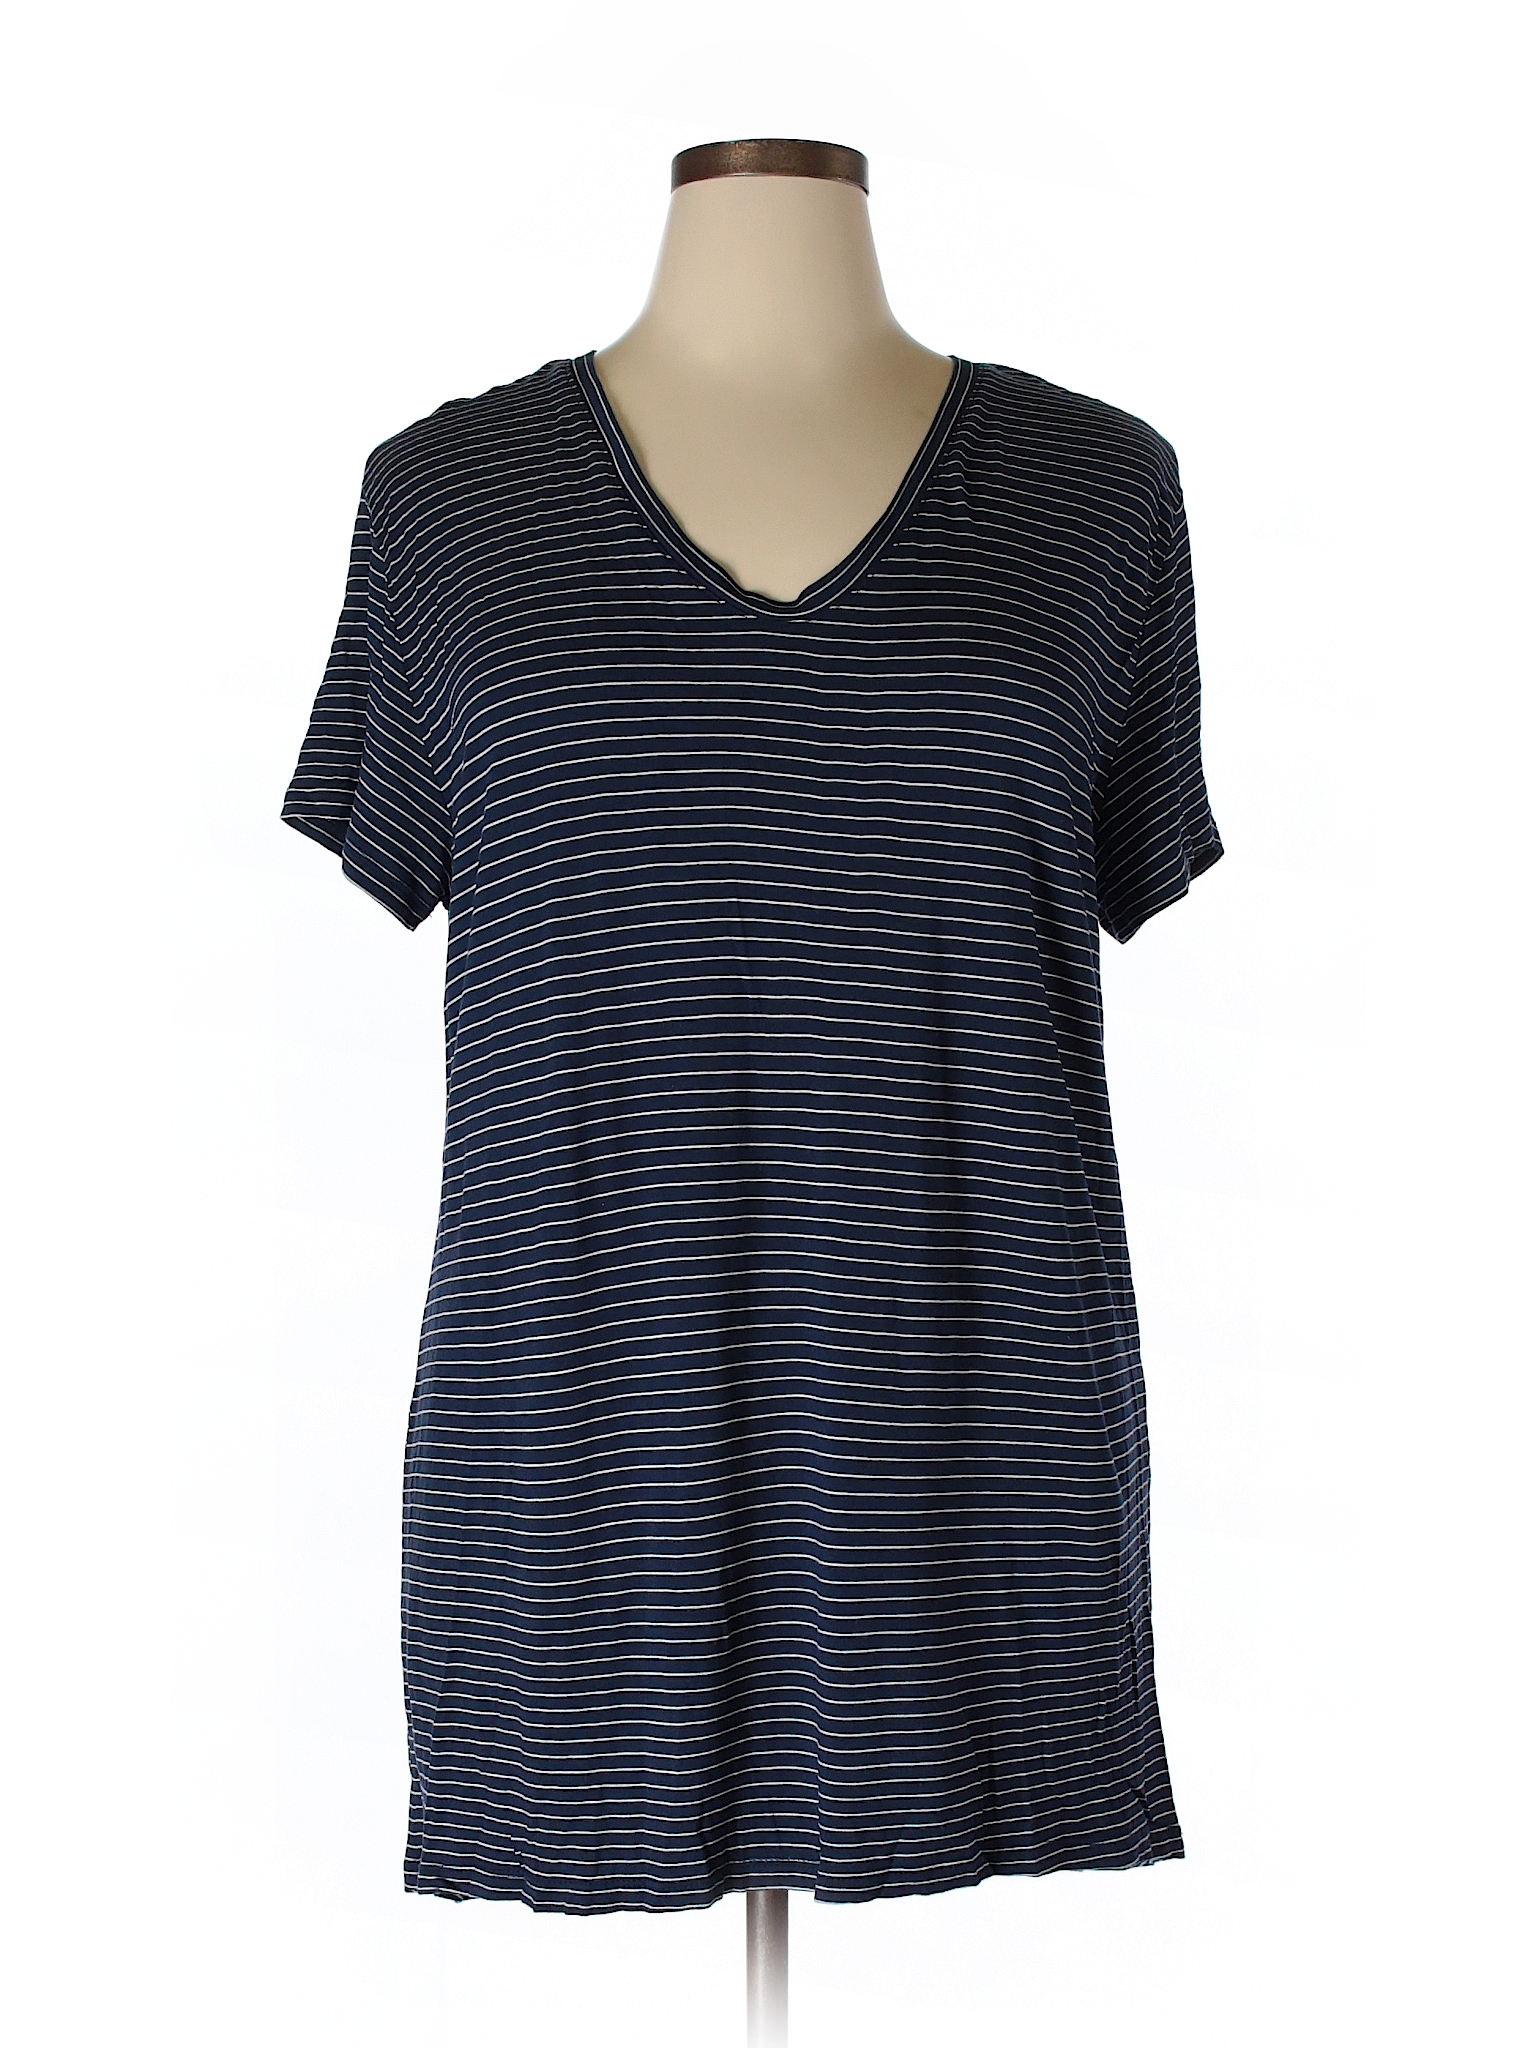 Sejour 100% Rayon Stripes Blue Short Sleeve T-Shirt Size 1X (Plus) - 60 ...